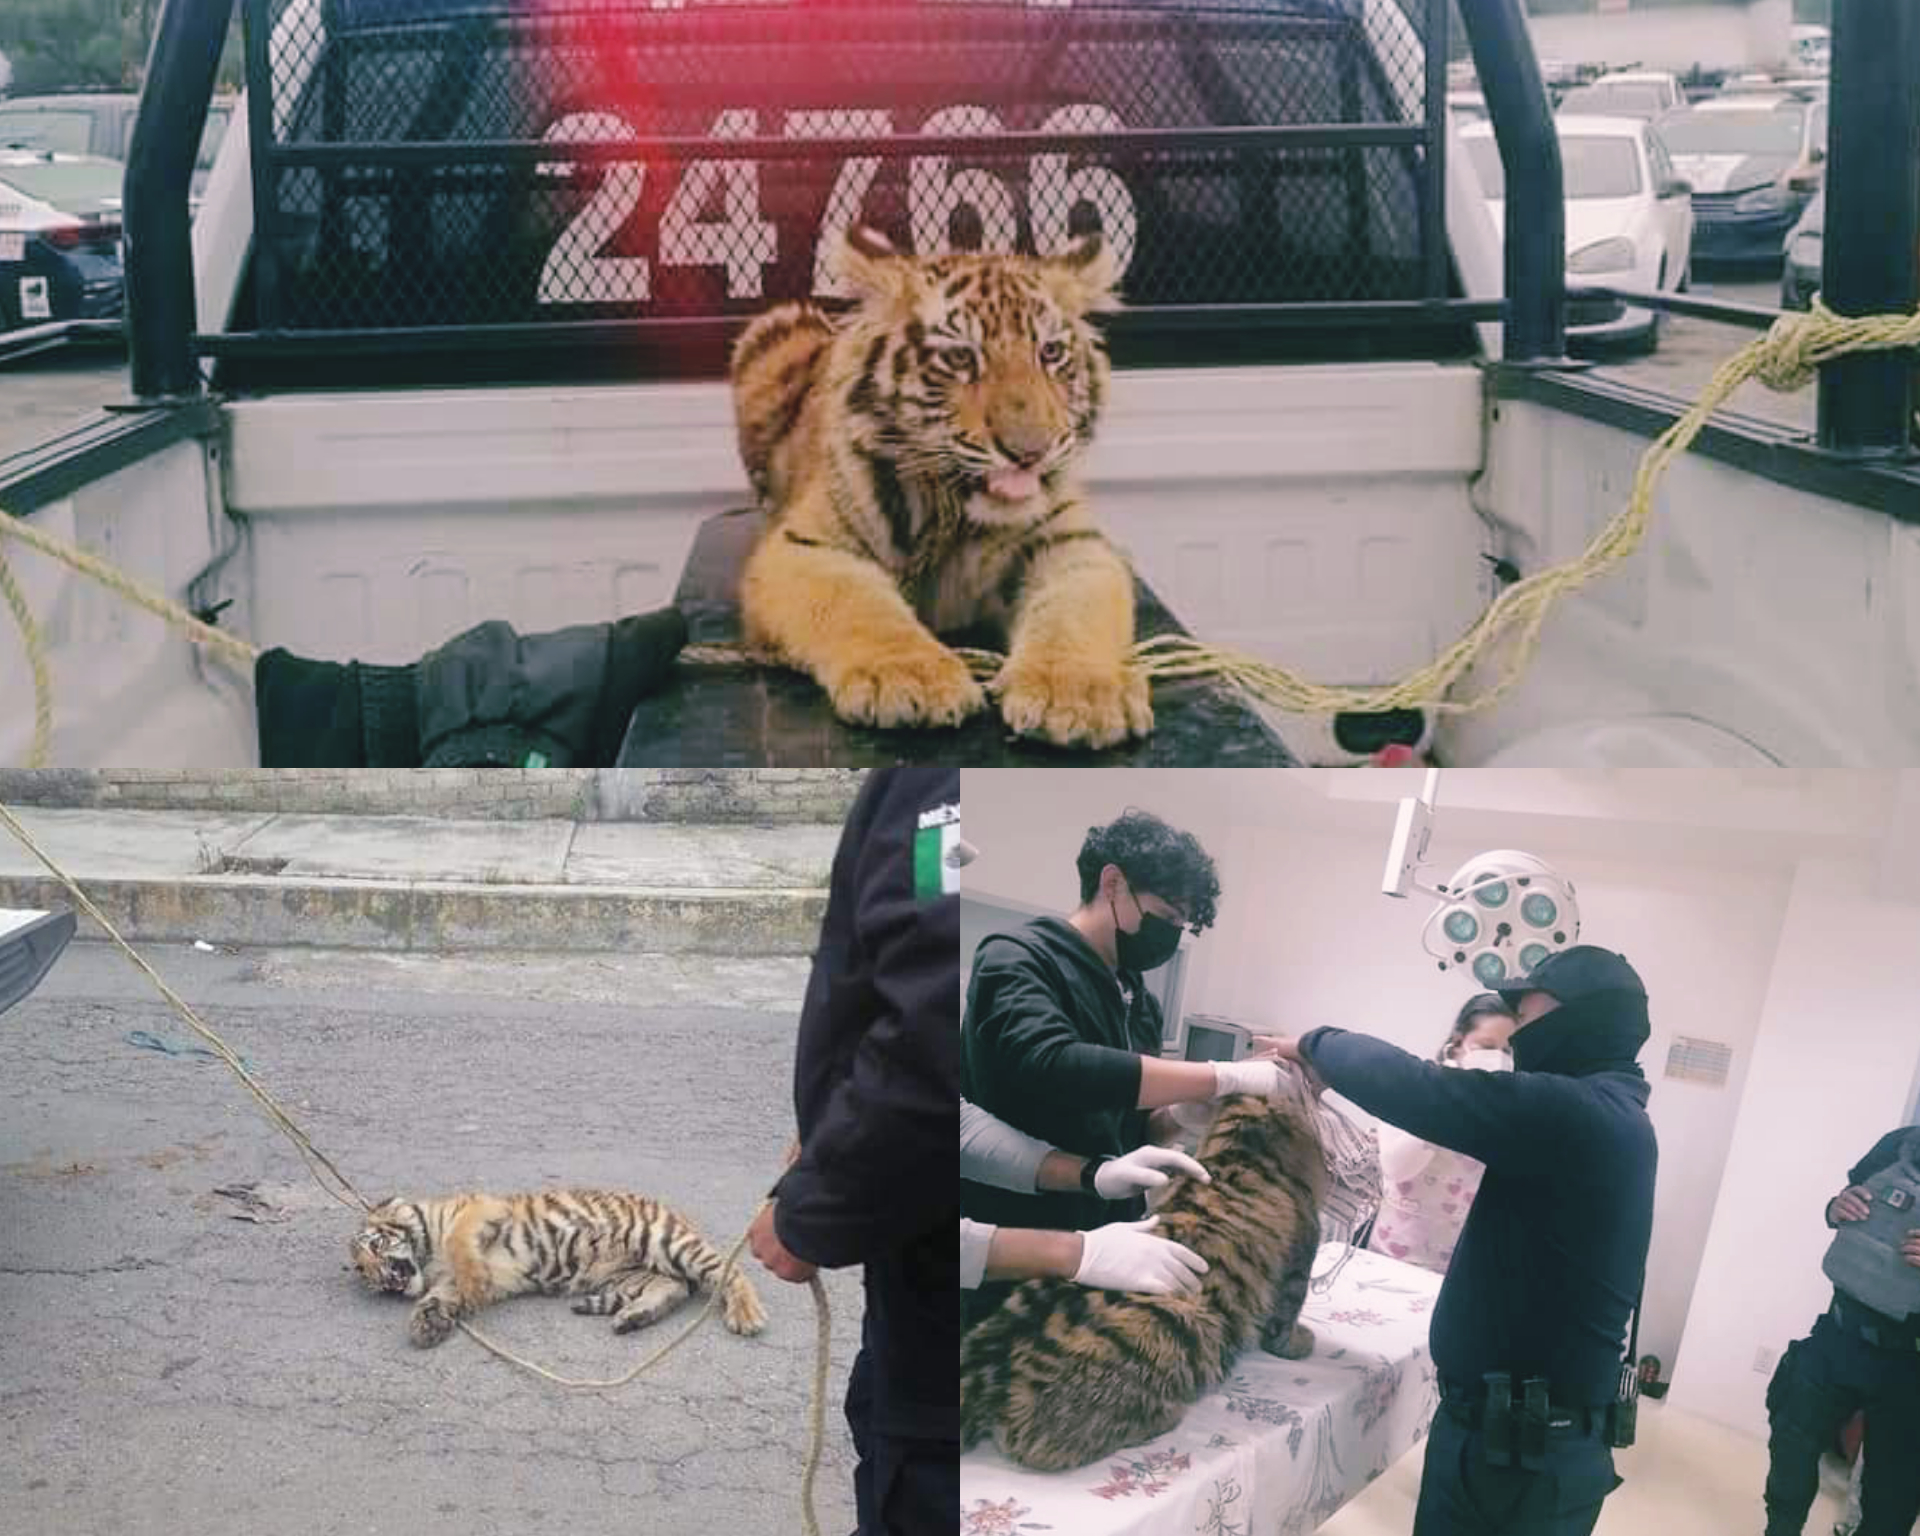 Capturan a tigre en calles de Cuautitlán Izcalli #regionmx 